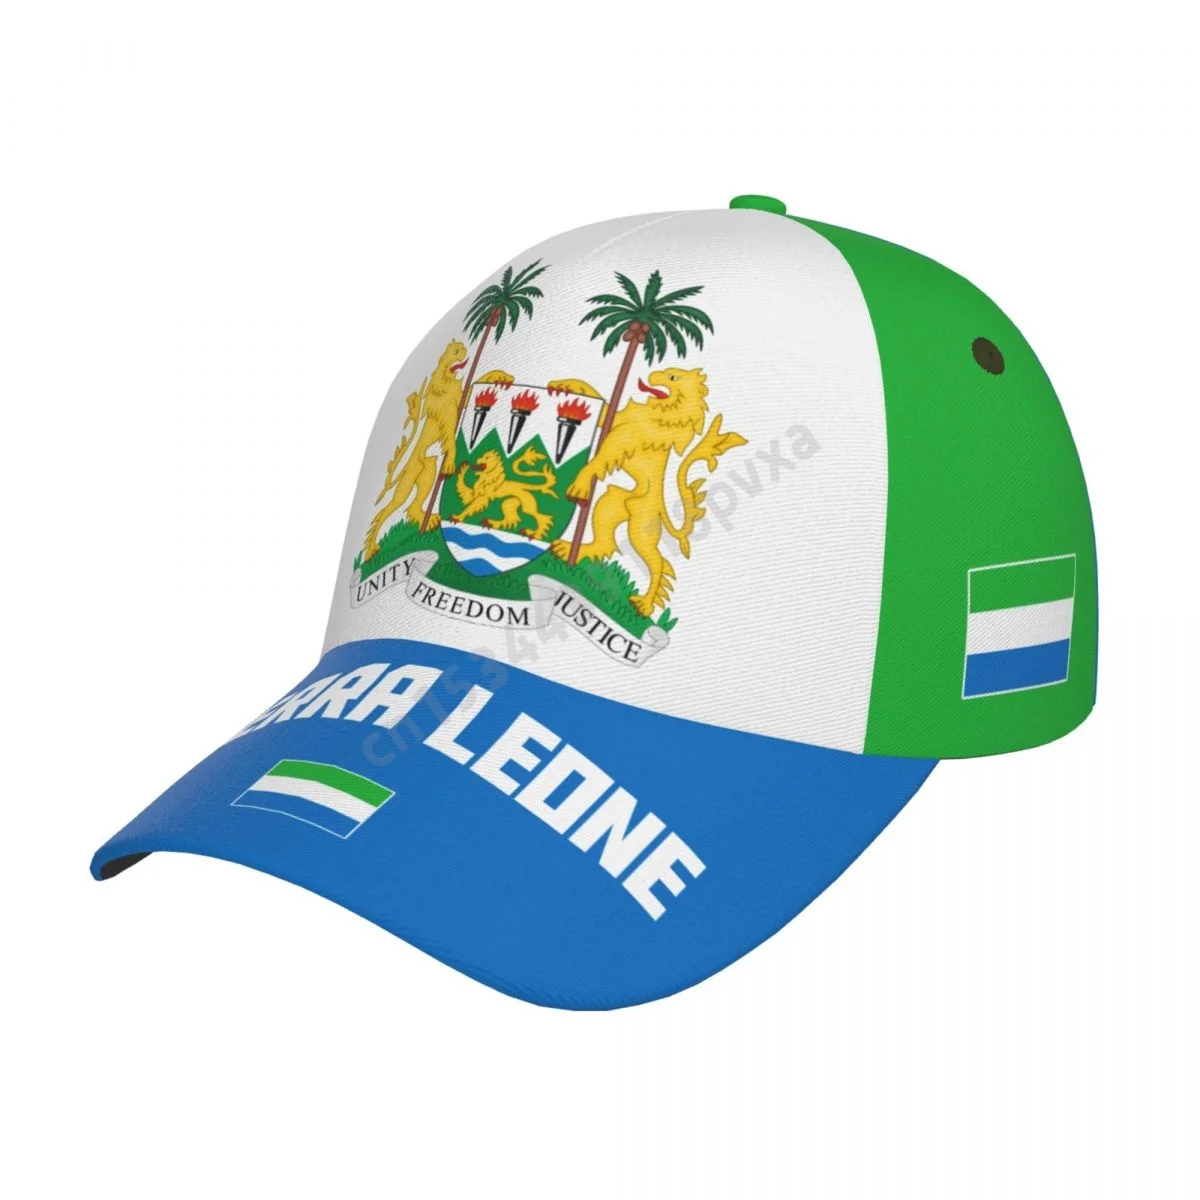 Unisex Sierra Leone Flag Adult Baseball Cap Patriotic Hat for Baseball Soccer Fans Men Women